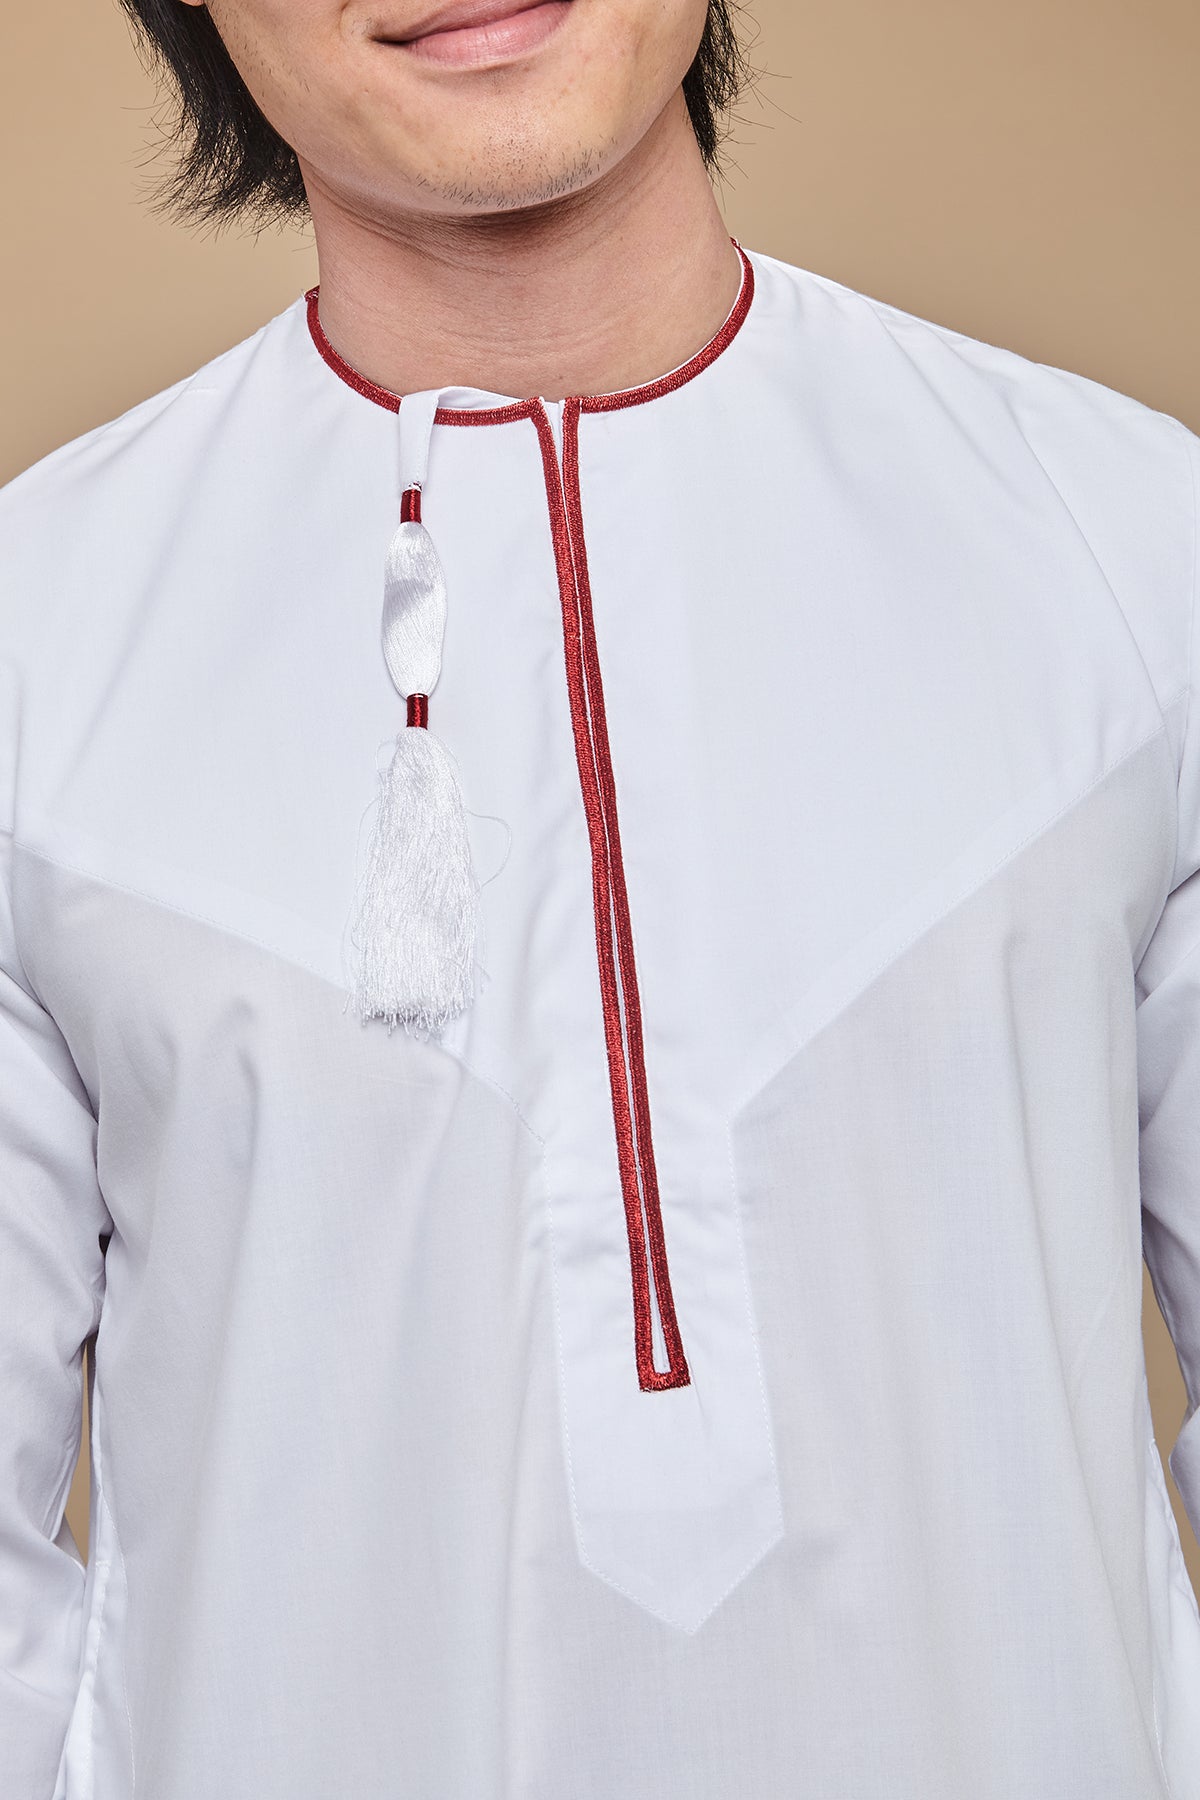 White & Maroon Omani Thobe